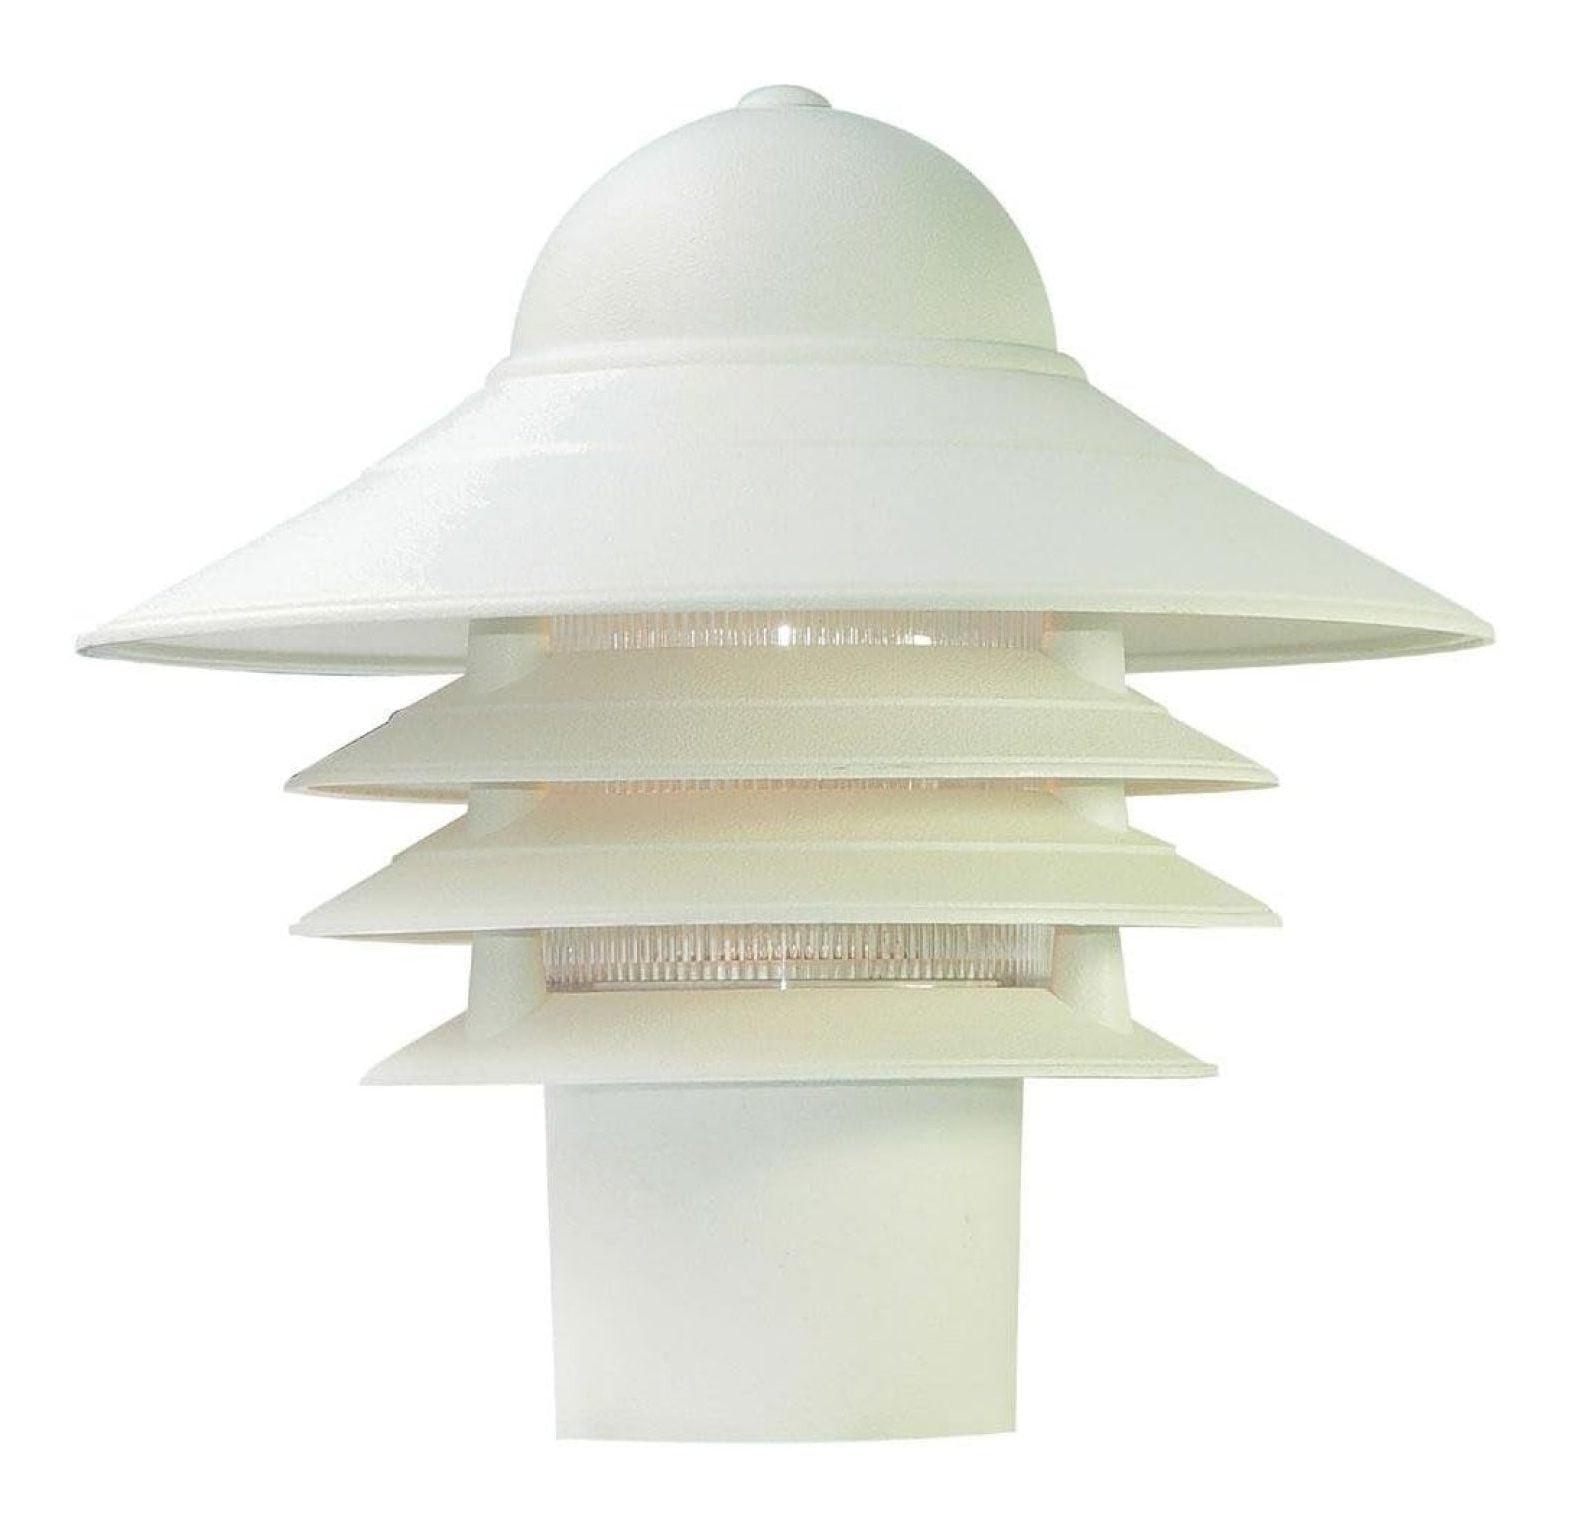 Mariner Textured White 10" Industrial Outdoor Post Mount Lantern